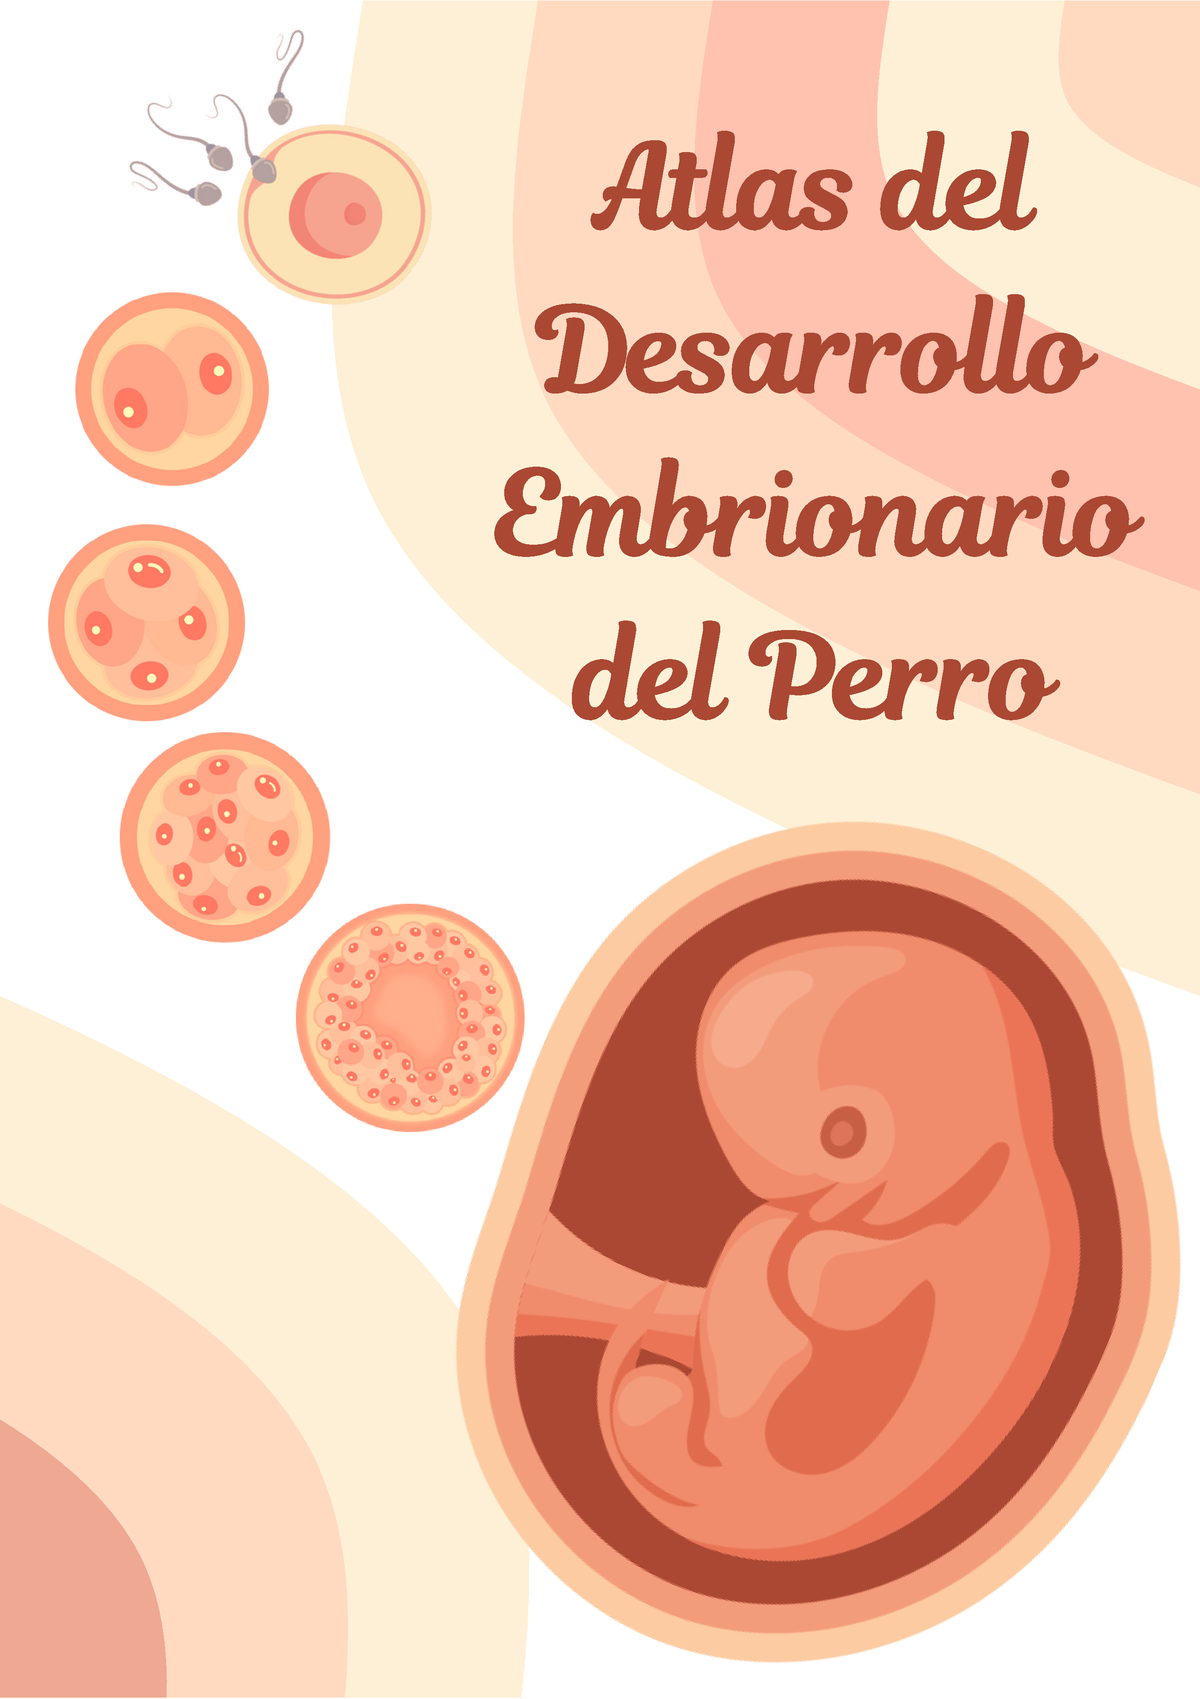 Atlas Del Desarrollo Embrionario Del Perro Embriología Atlas Delatlas Del Desarrollodesarrollo 8909